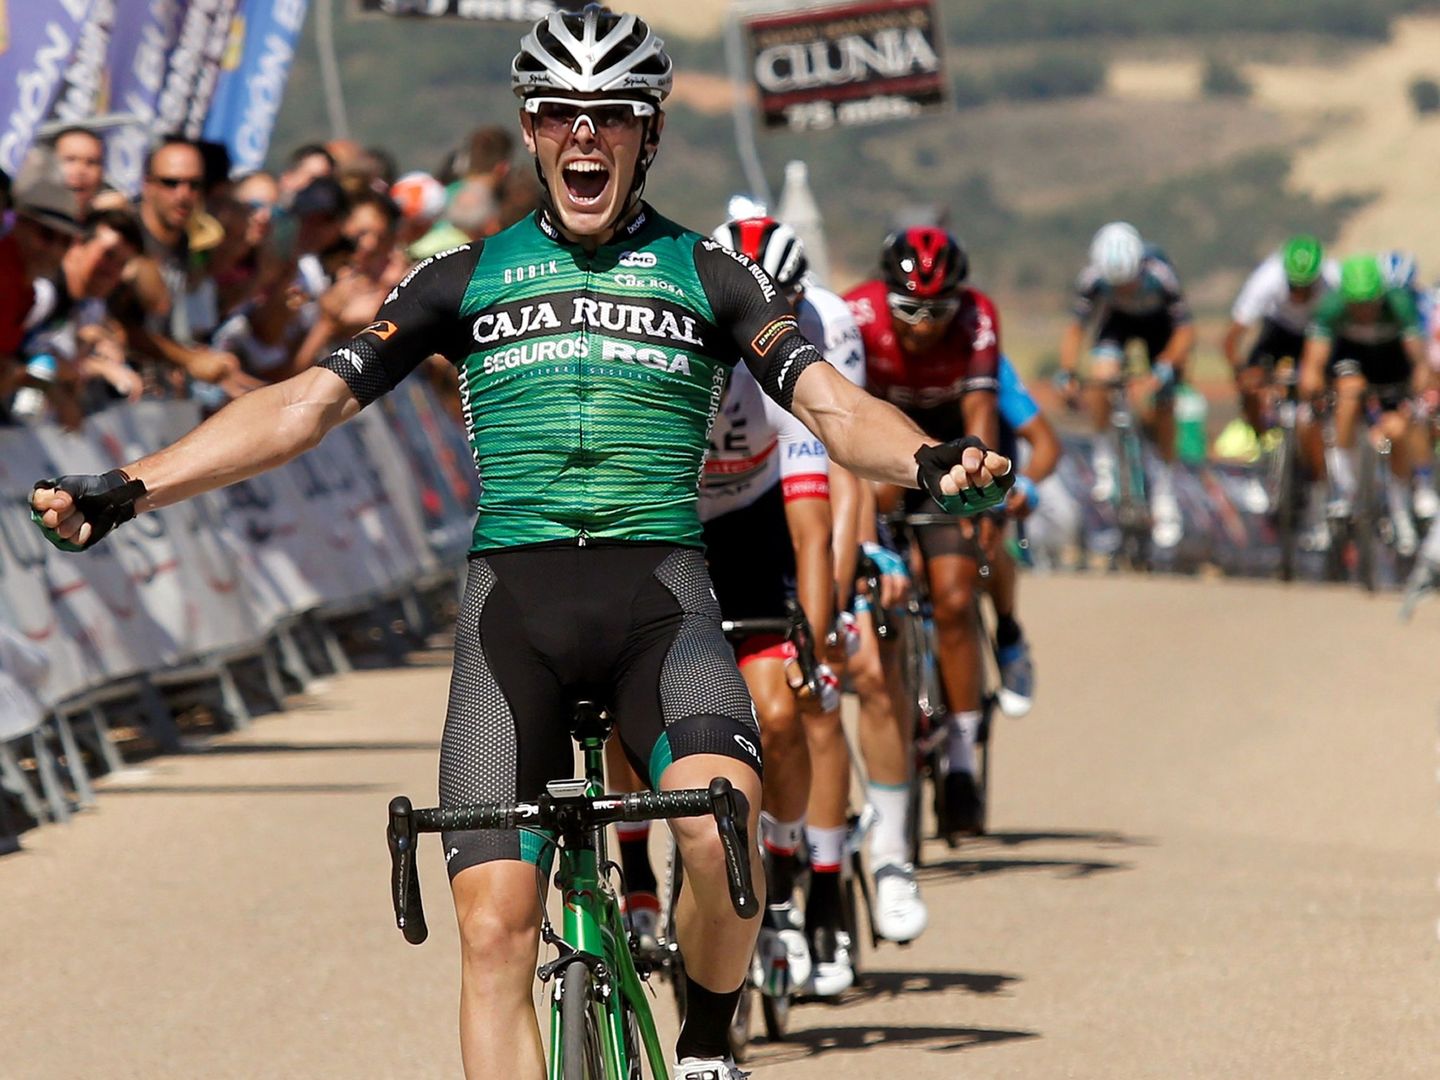 Aranburu cruza la meta con el maillot de Caja Rural para imponerse en la pasada Vuelta a Burgos. (EFE)